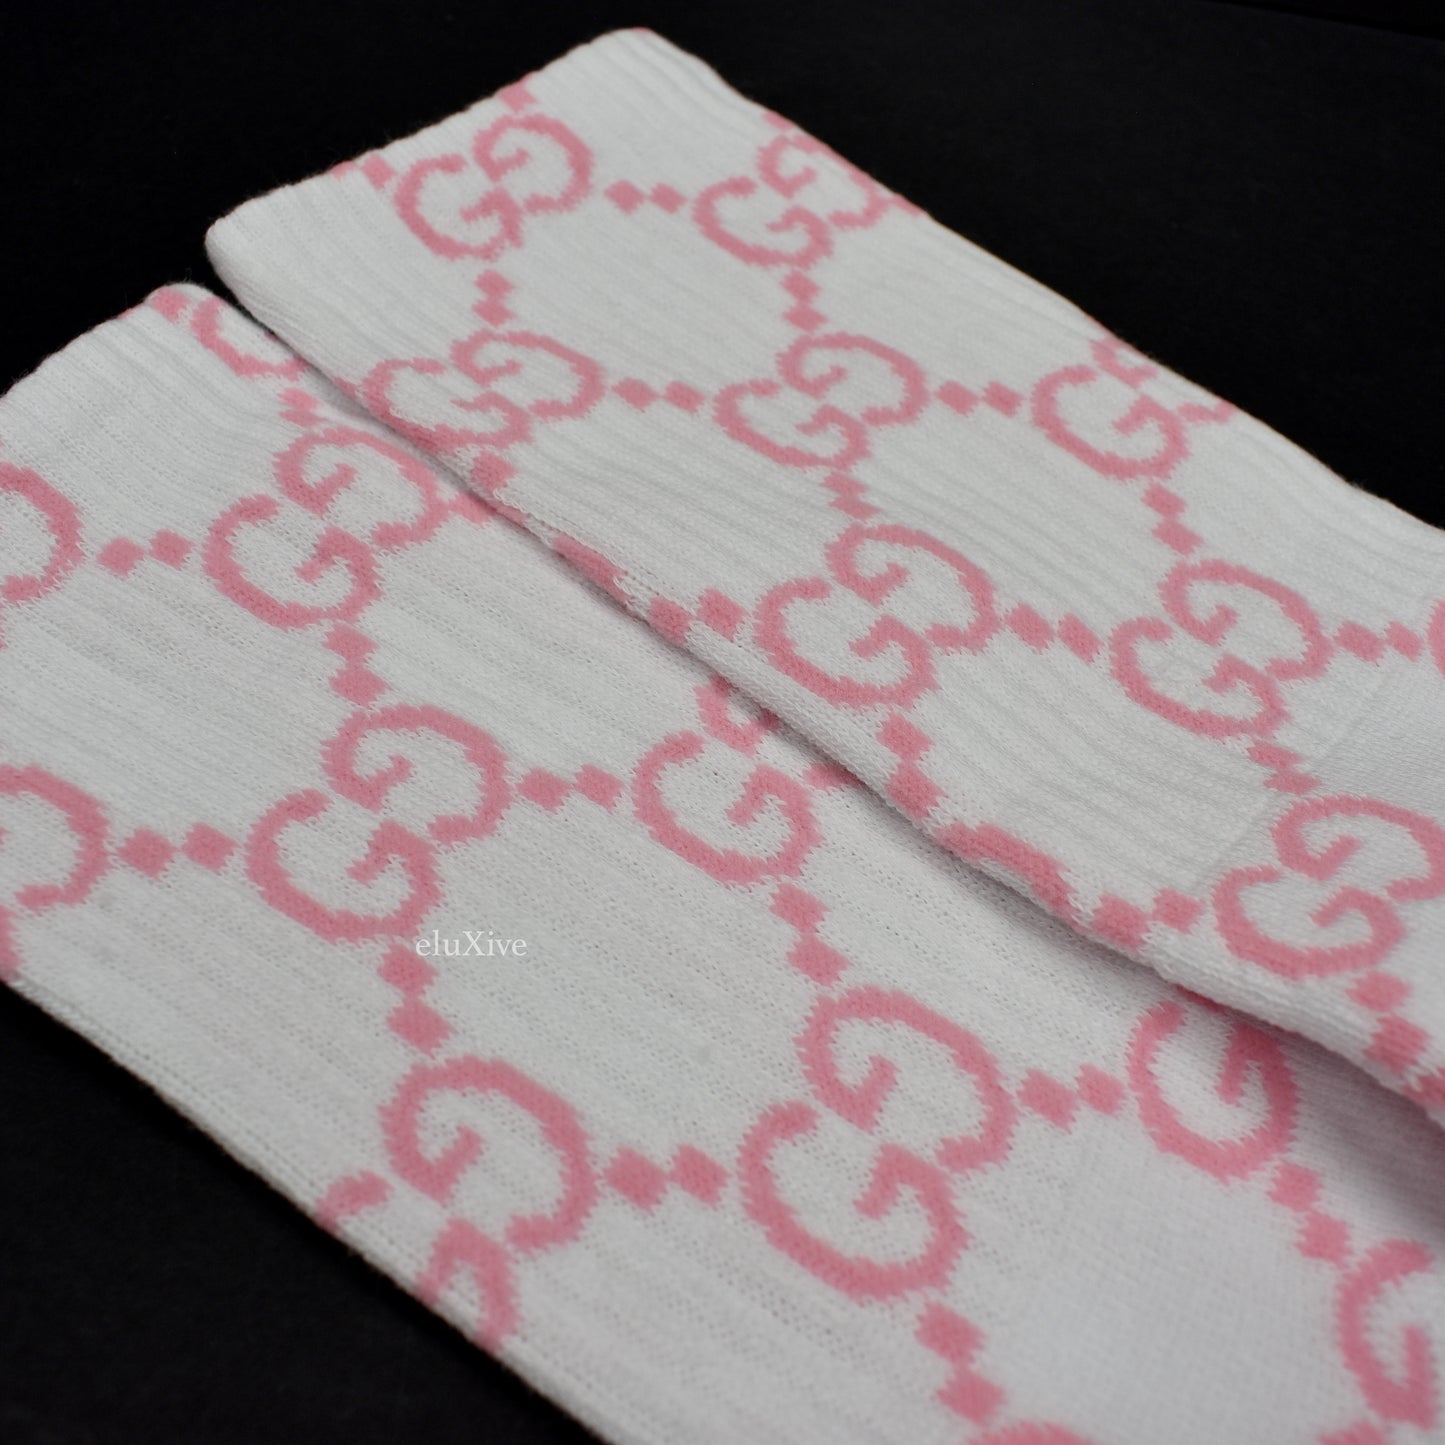 Imran Potato - White/Pink 'Gucci' Logo Knit Socks